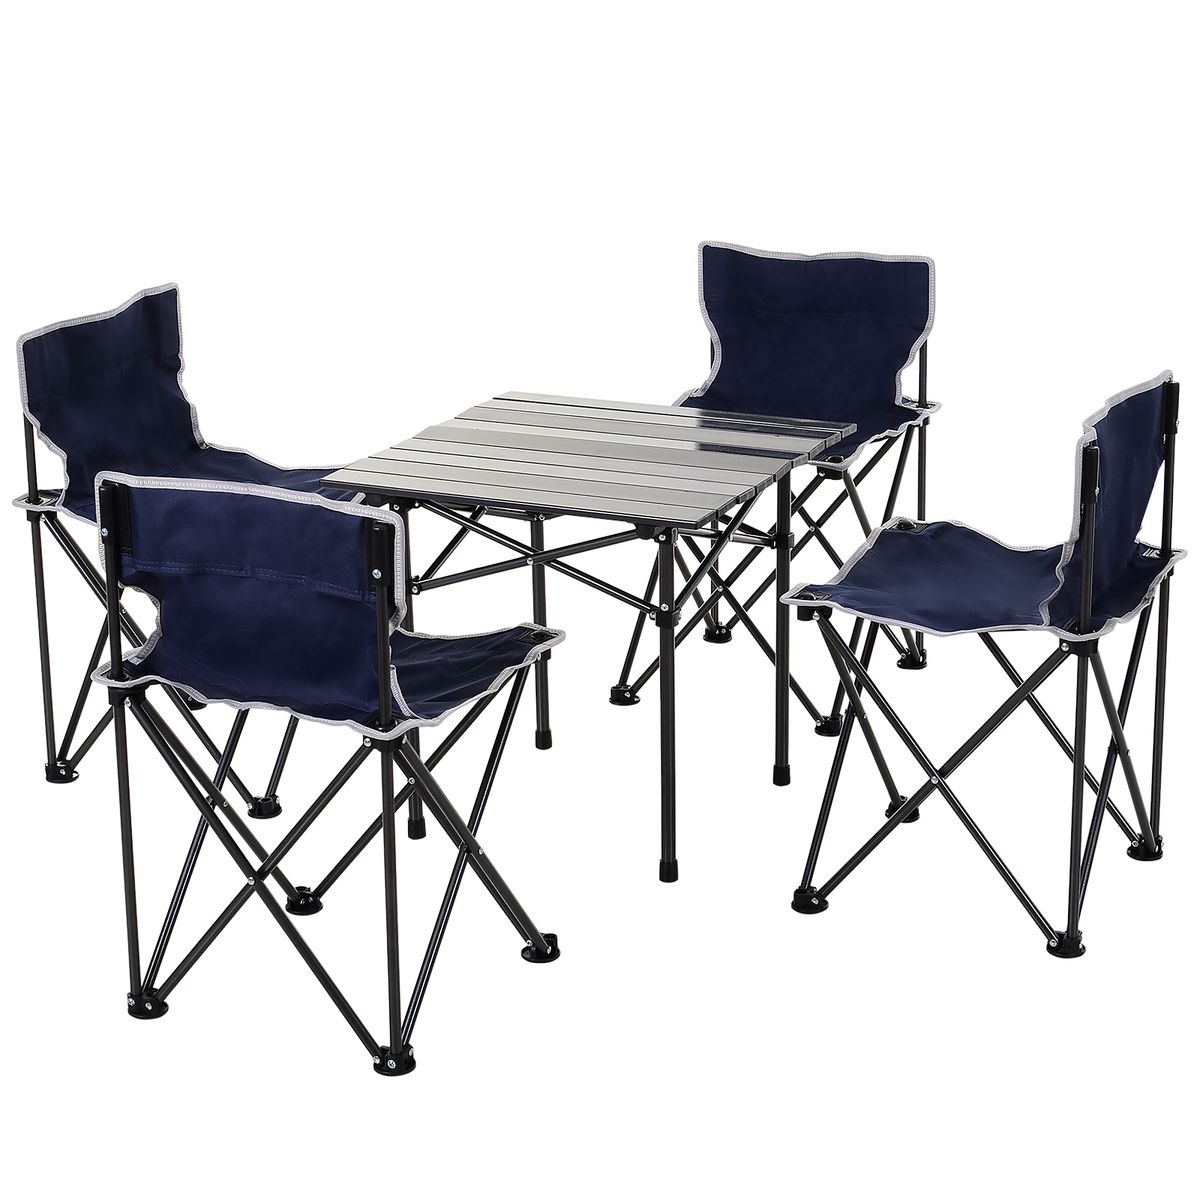 OUTSUNNY Table de camping + 4 chaises + sac de transport - pliant léger  petit portable - pour pique-nique, festival, barbecue, randonnée, pêche -  acier alu. noir Oxford bleu pas cher 